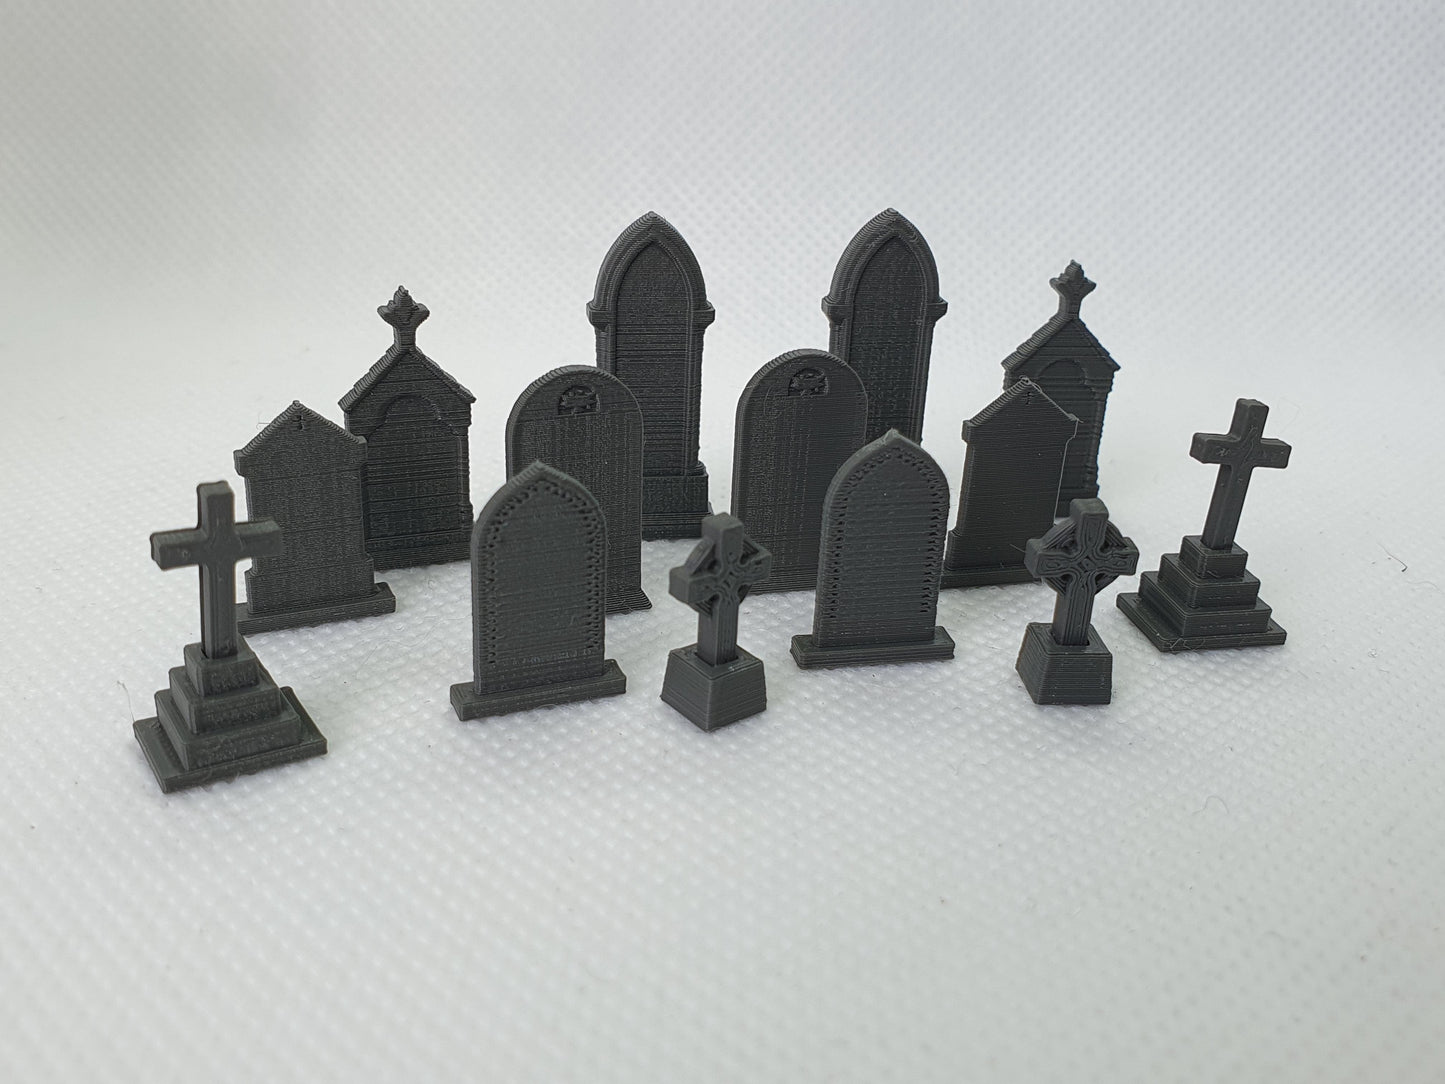 OO scale models of old gravestones - Three Peaks Models